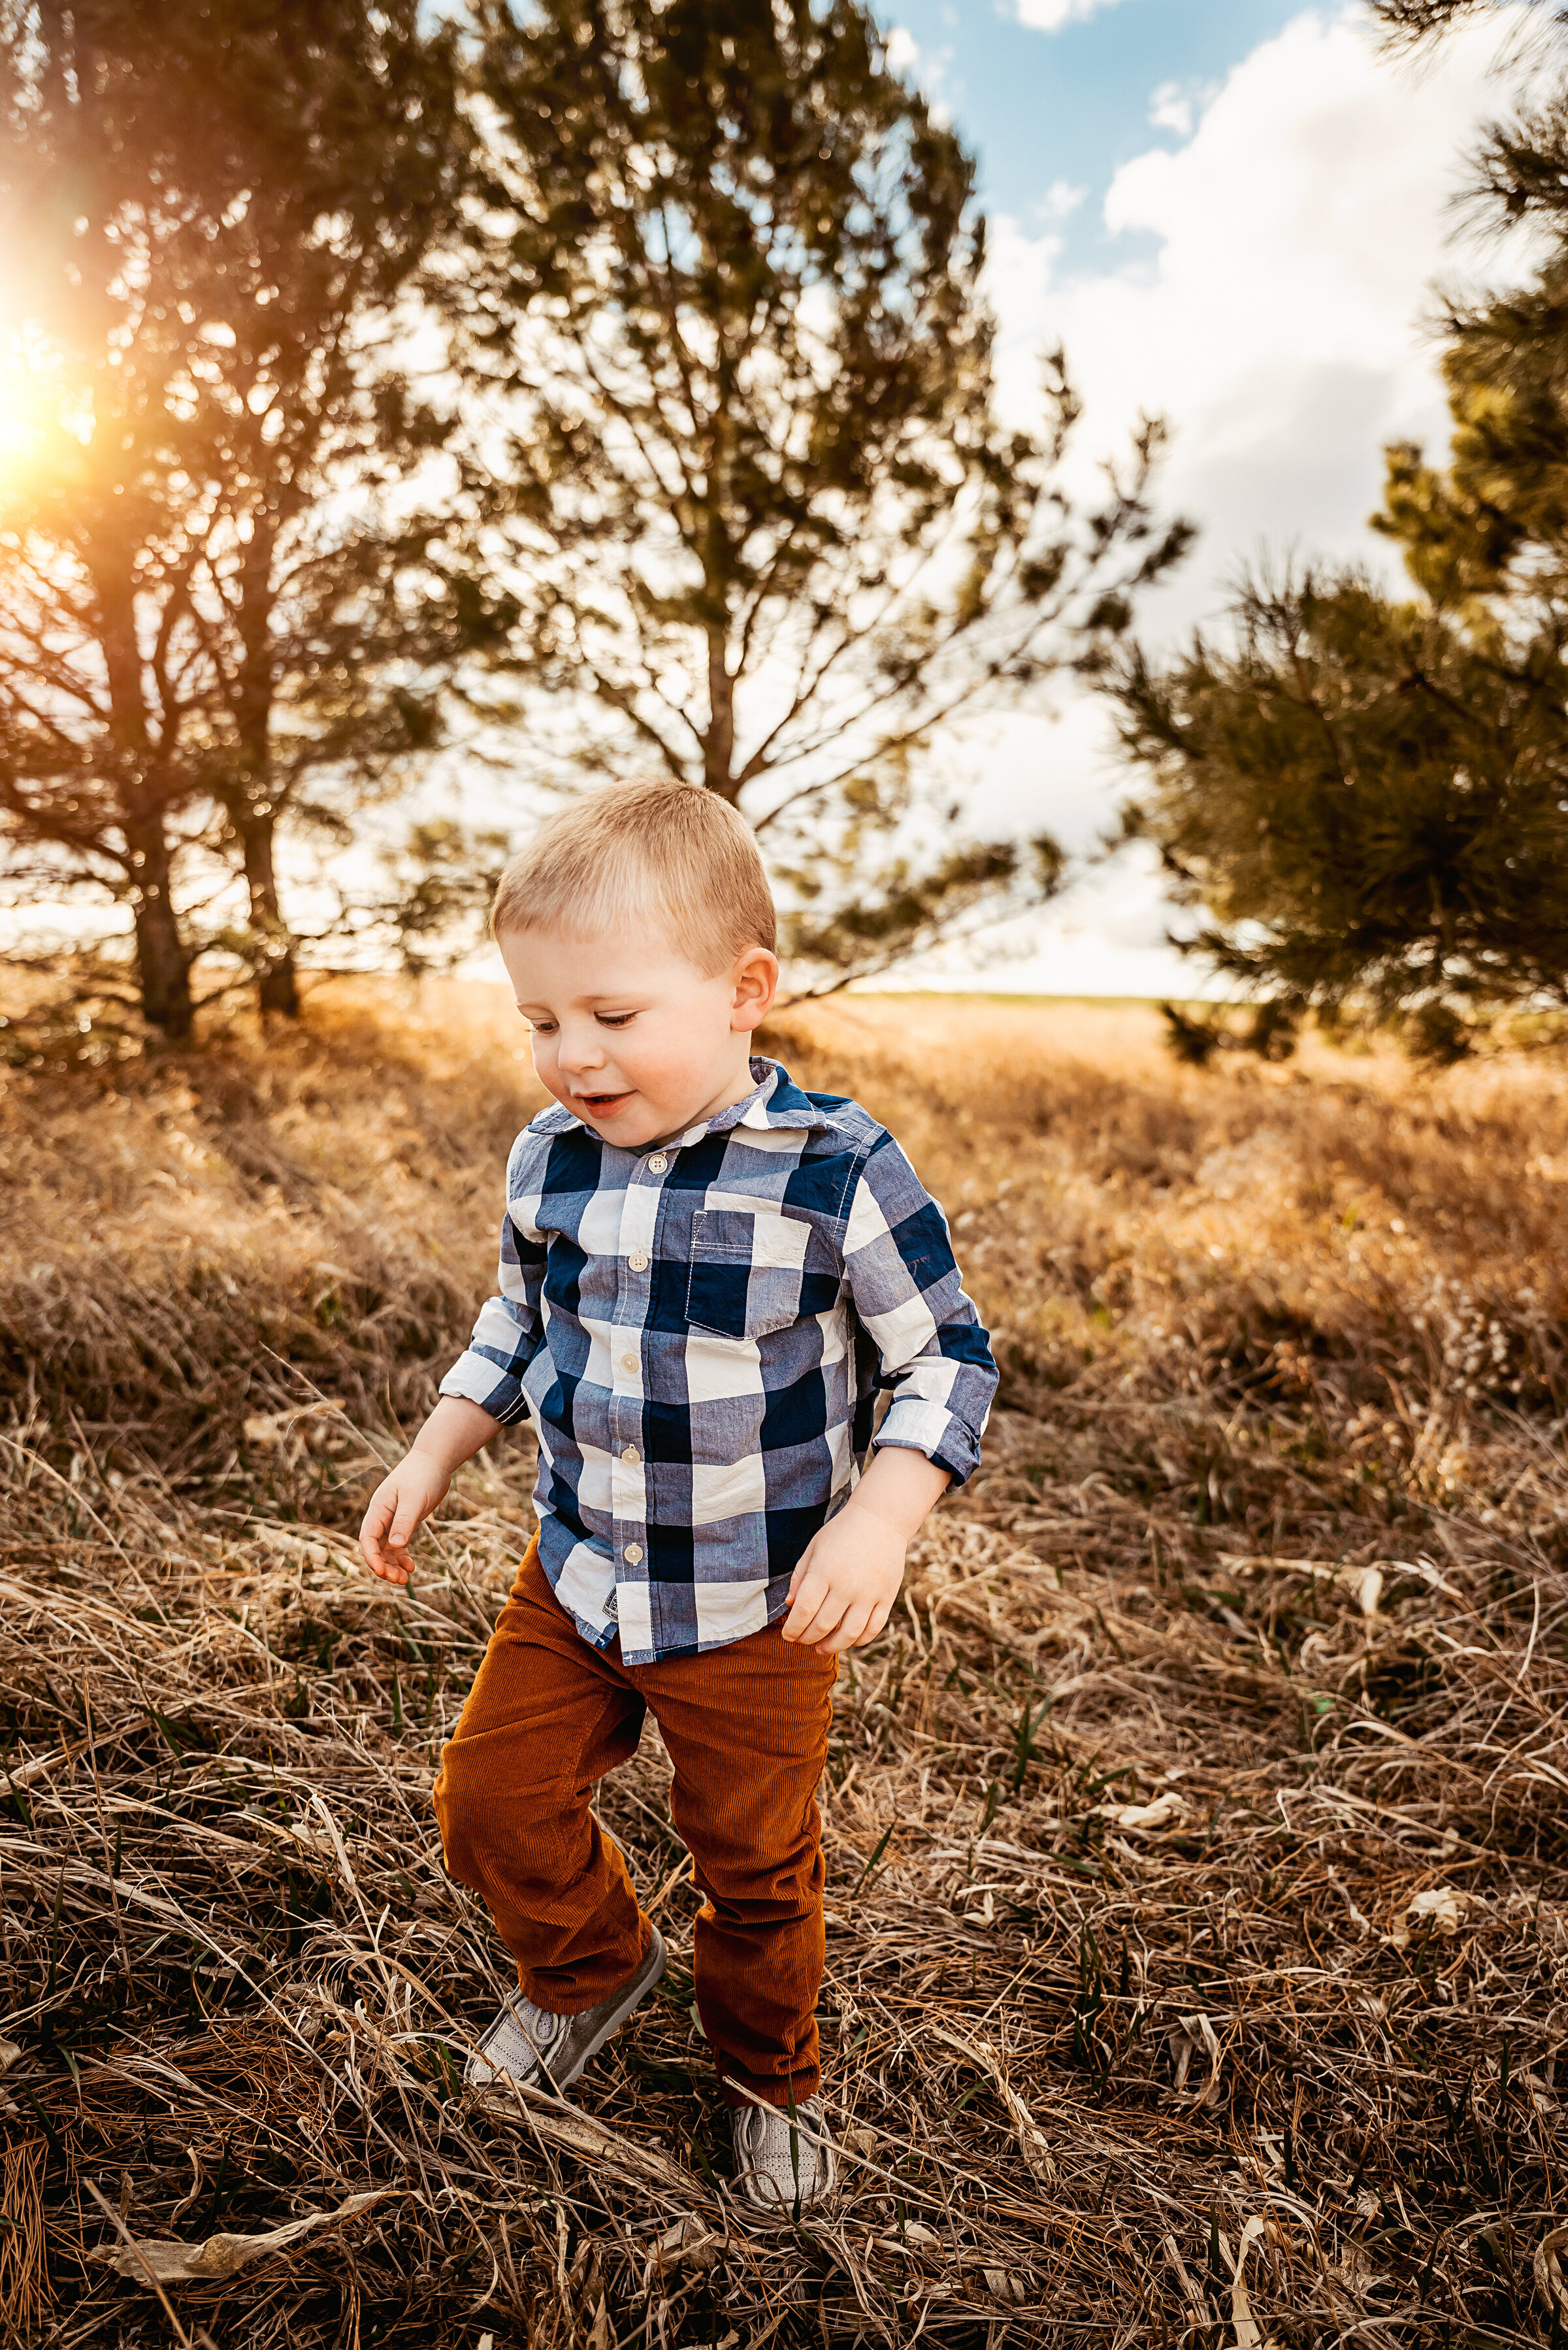 Little boy runs through field while sun shines